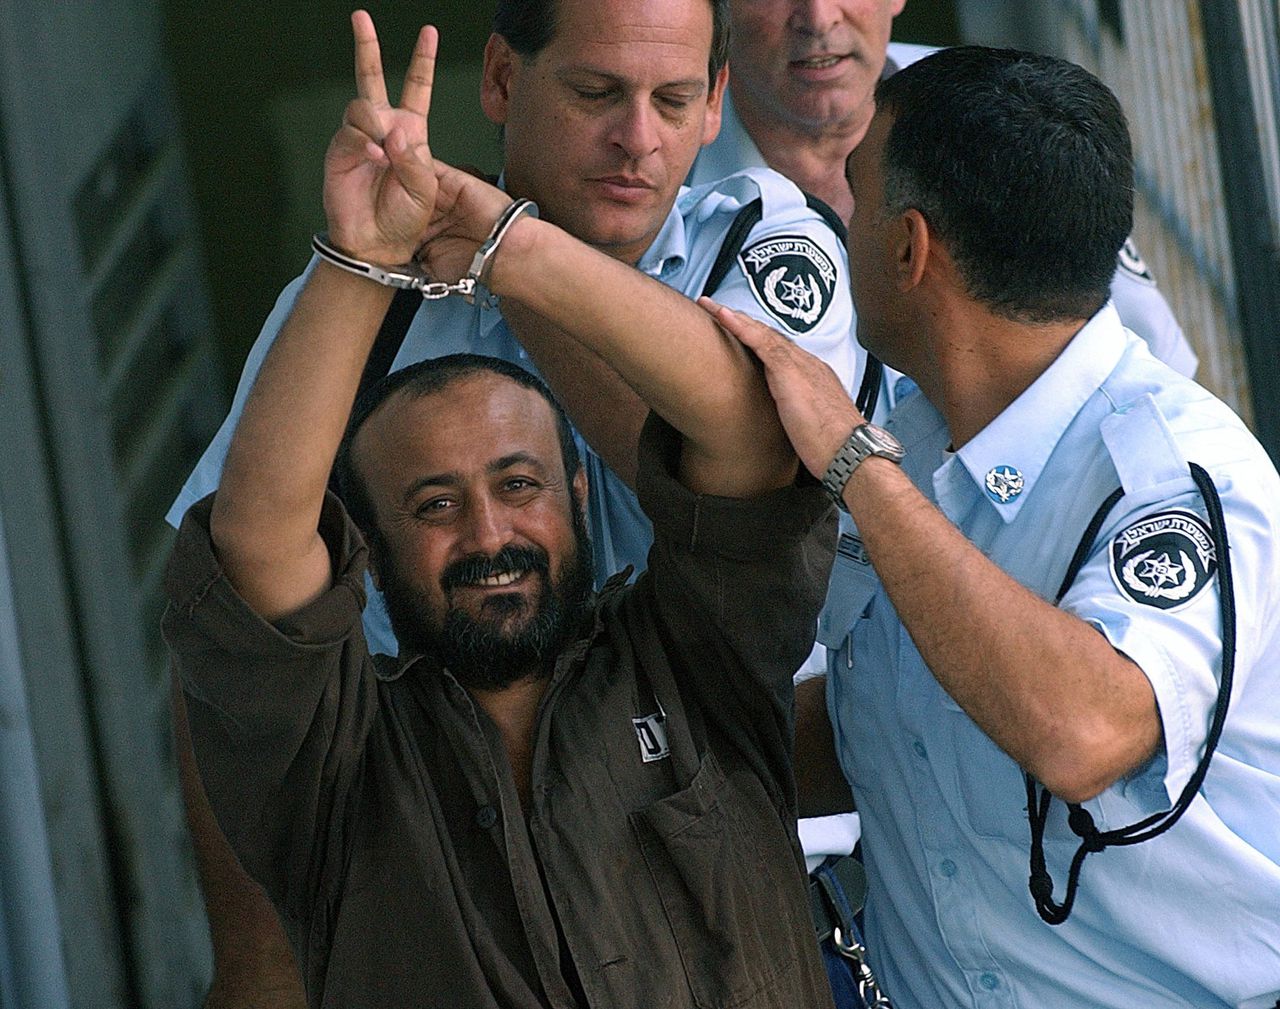 Gevangen Palestijnse leider vertegenwoordigt hoop op nationale eenheid 